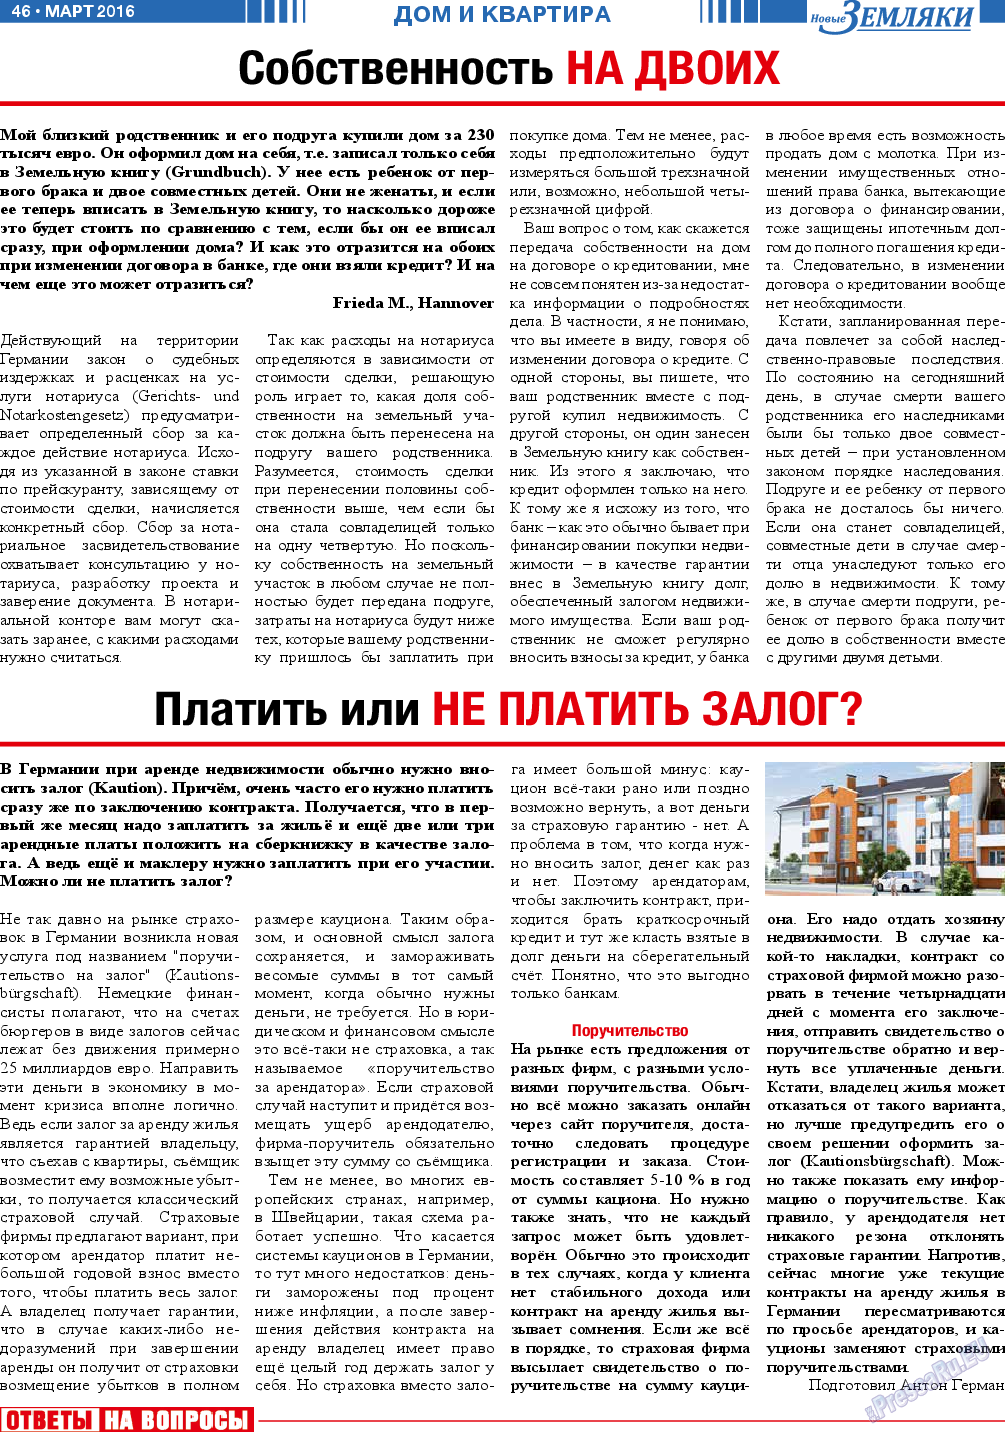 Новые Земляки, газета. 2016 №3 стр.46